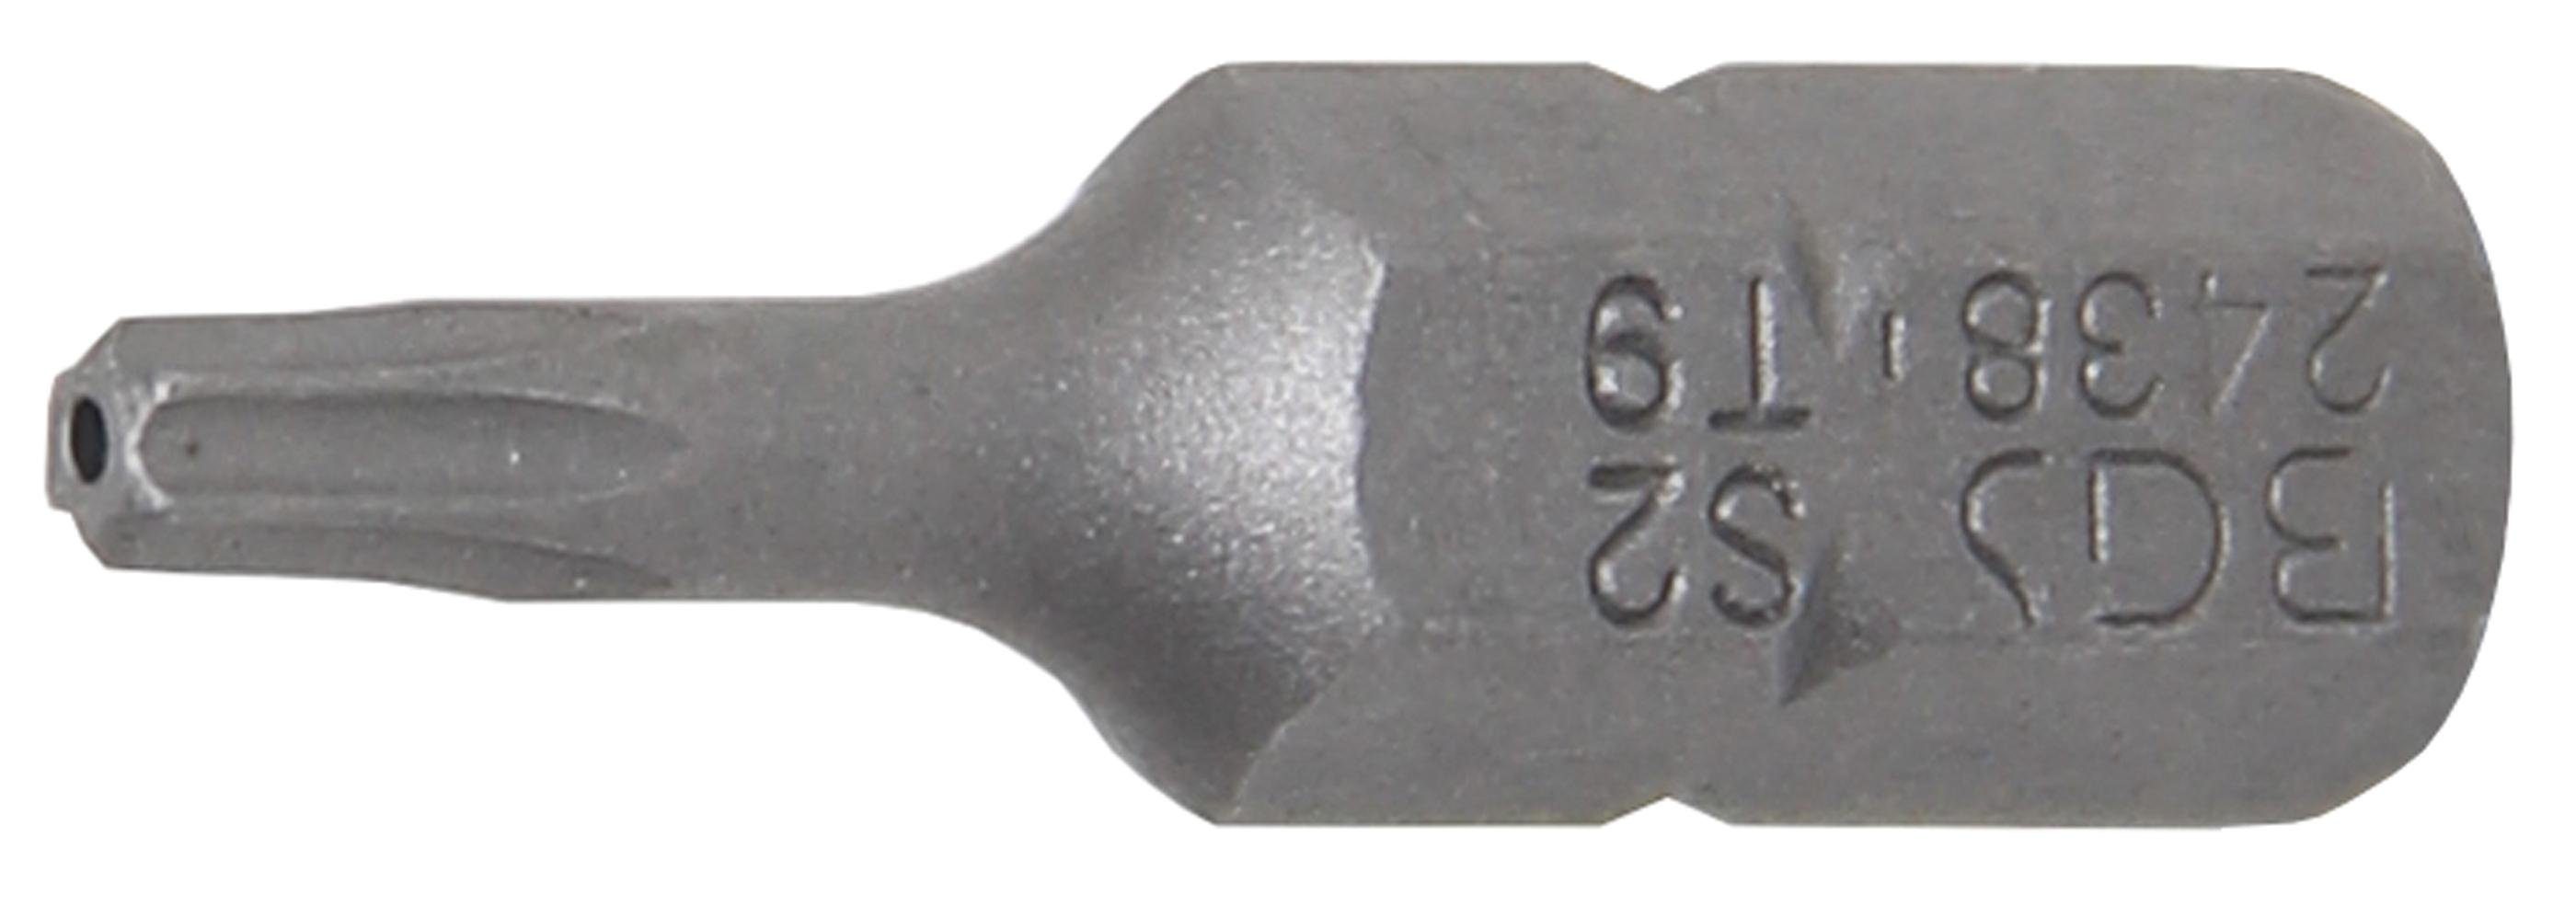 BGS technic Bit-Schraubendreher Bohrung T9 (1/4), Antrieb 6,3 (für T-Profil mit Außensechskant Torx) Bit, mm